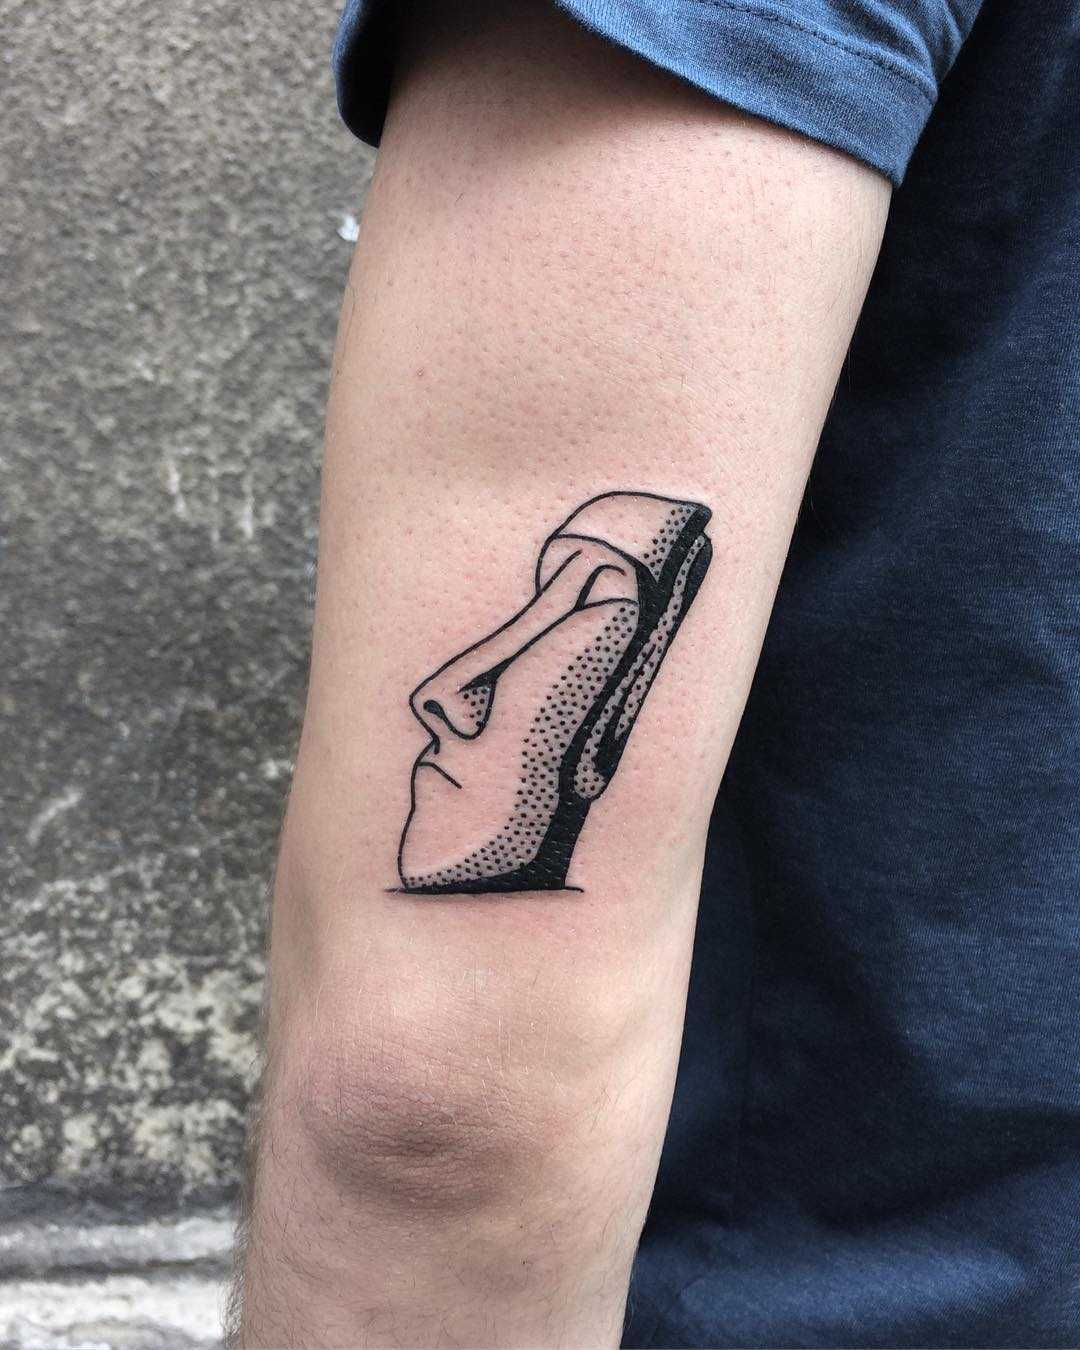 Moai tattoo by @skrzyniarz_